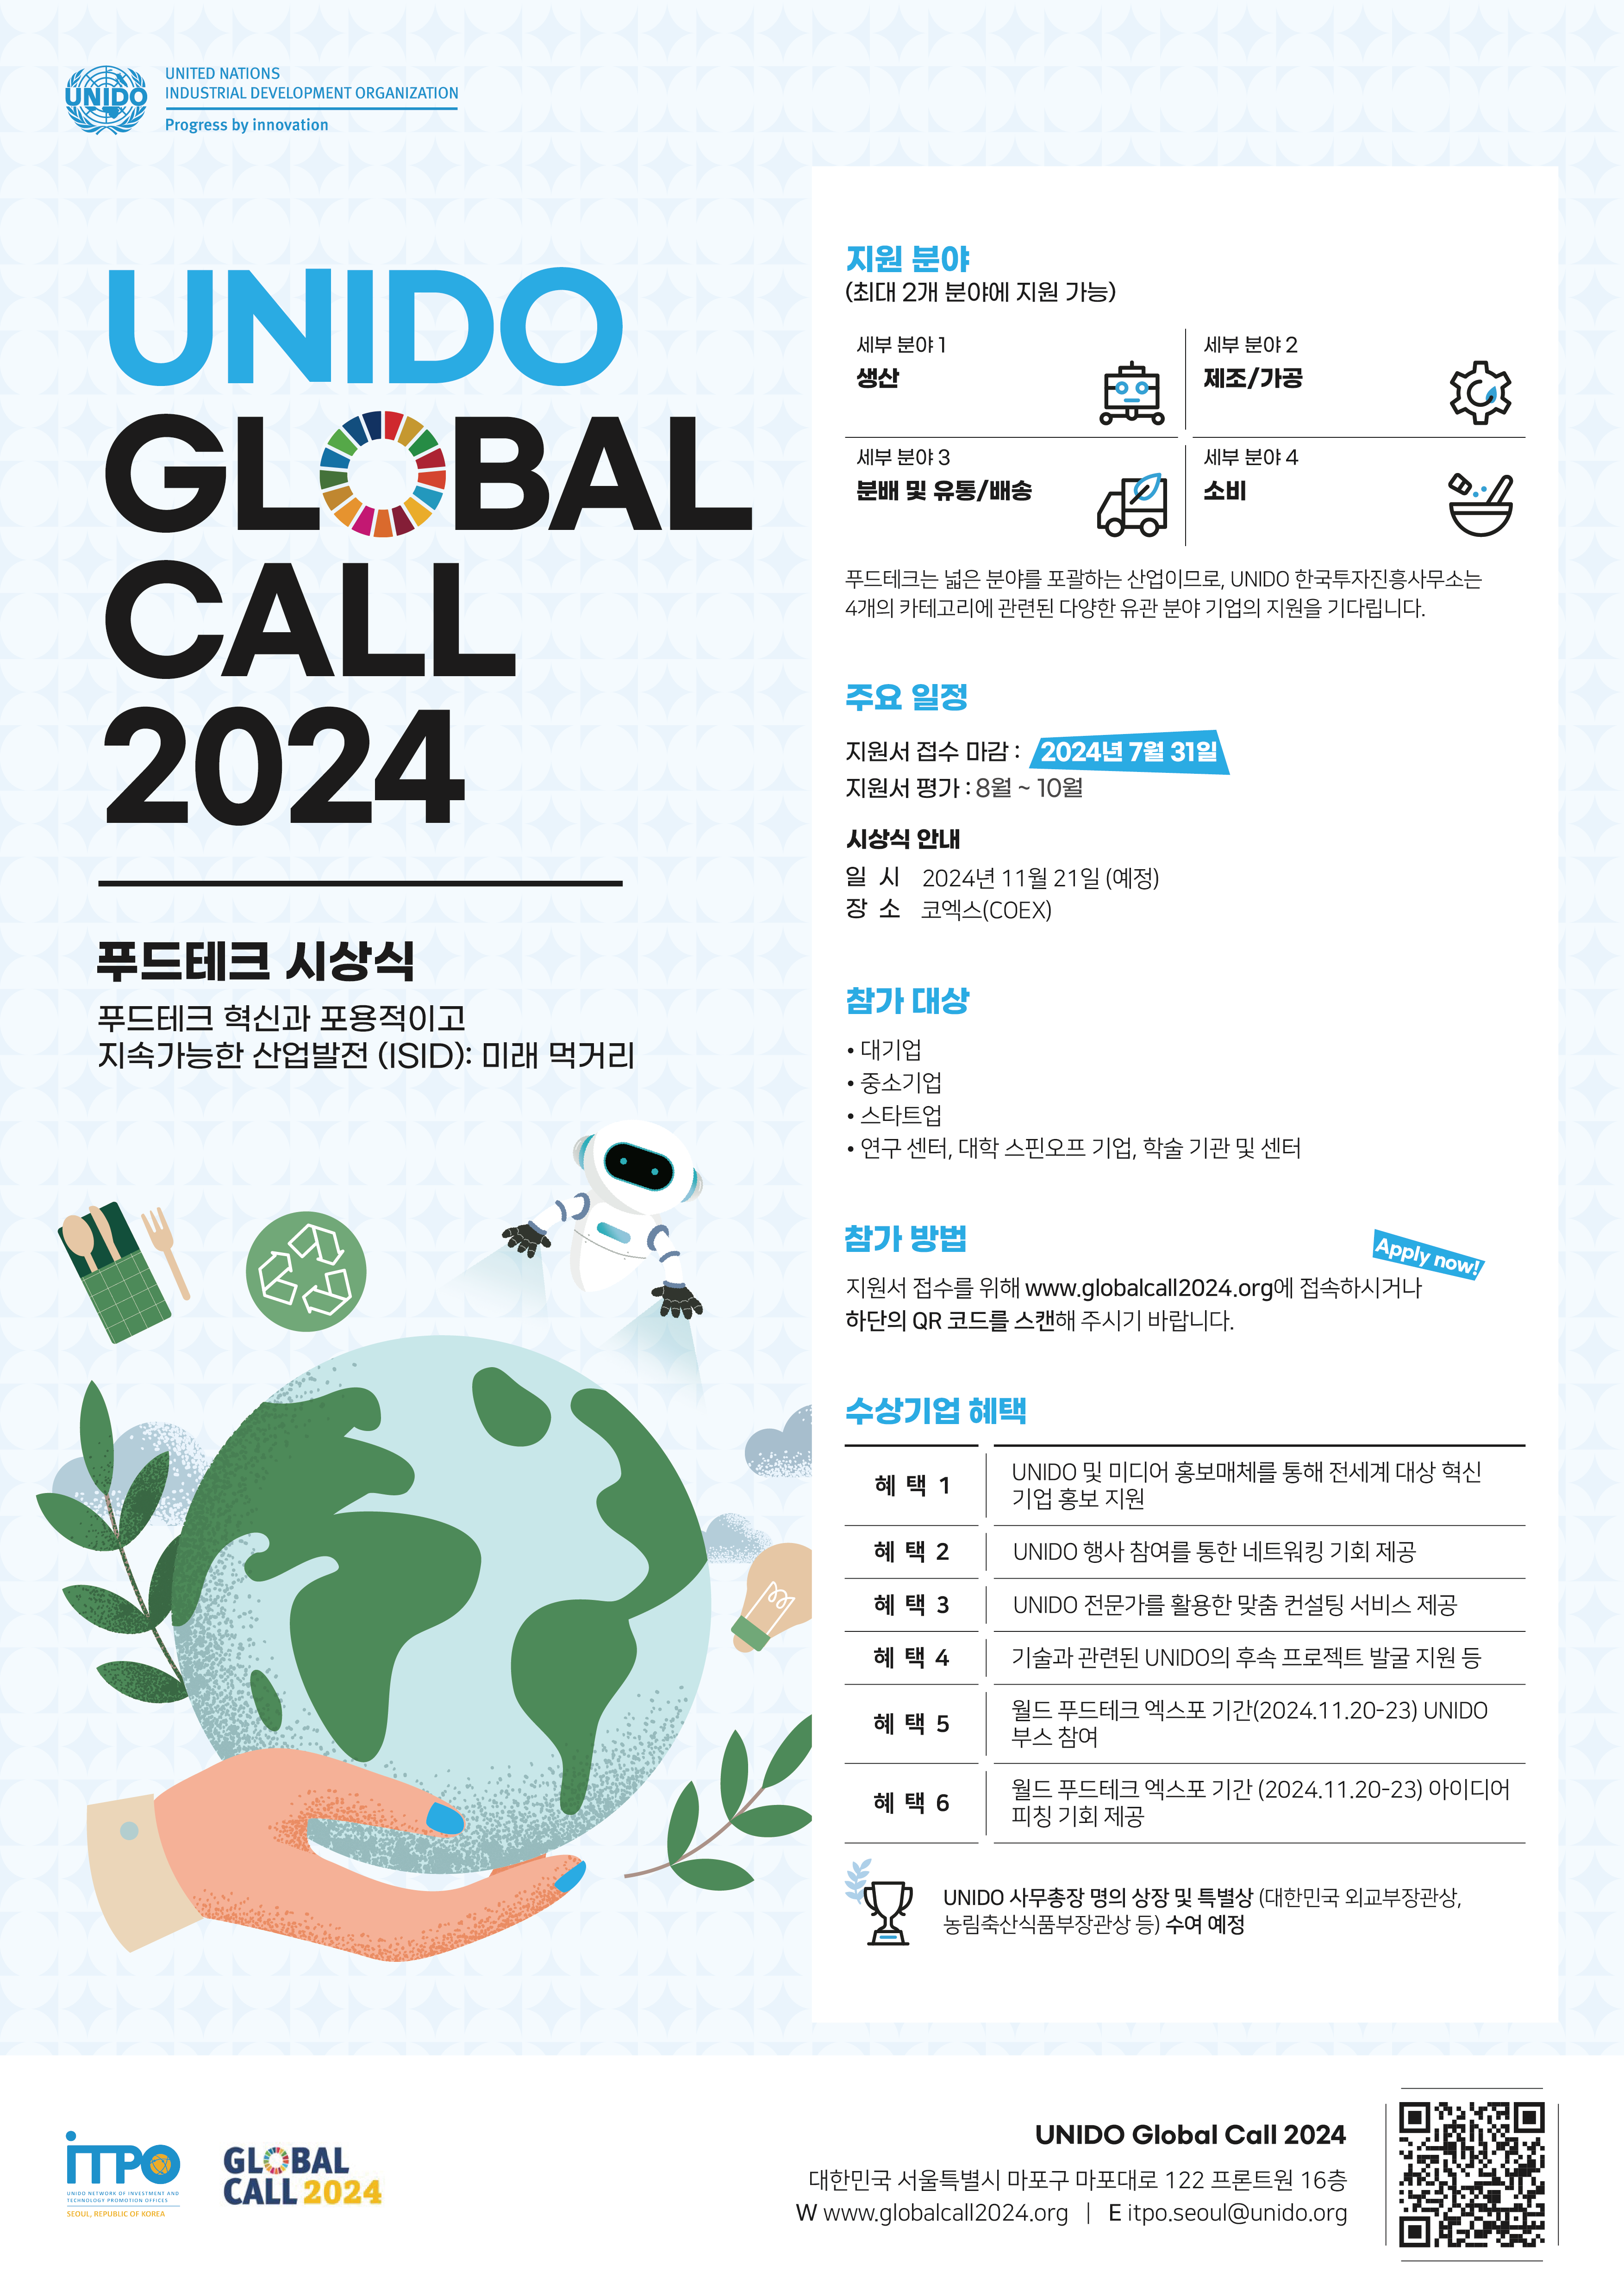 유엔공업개발기구(UNIDO) Global Call 2024 개최 